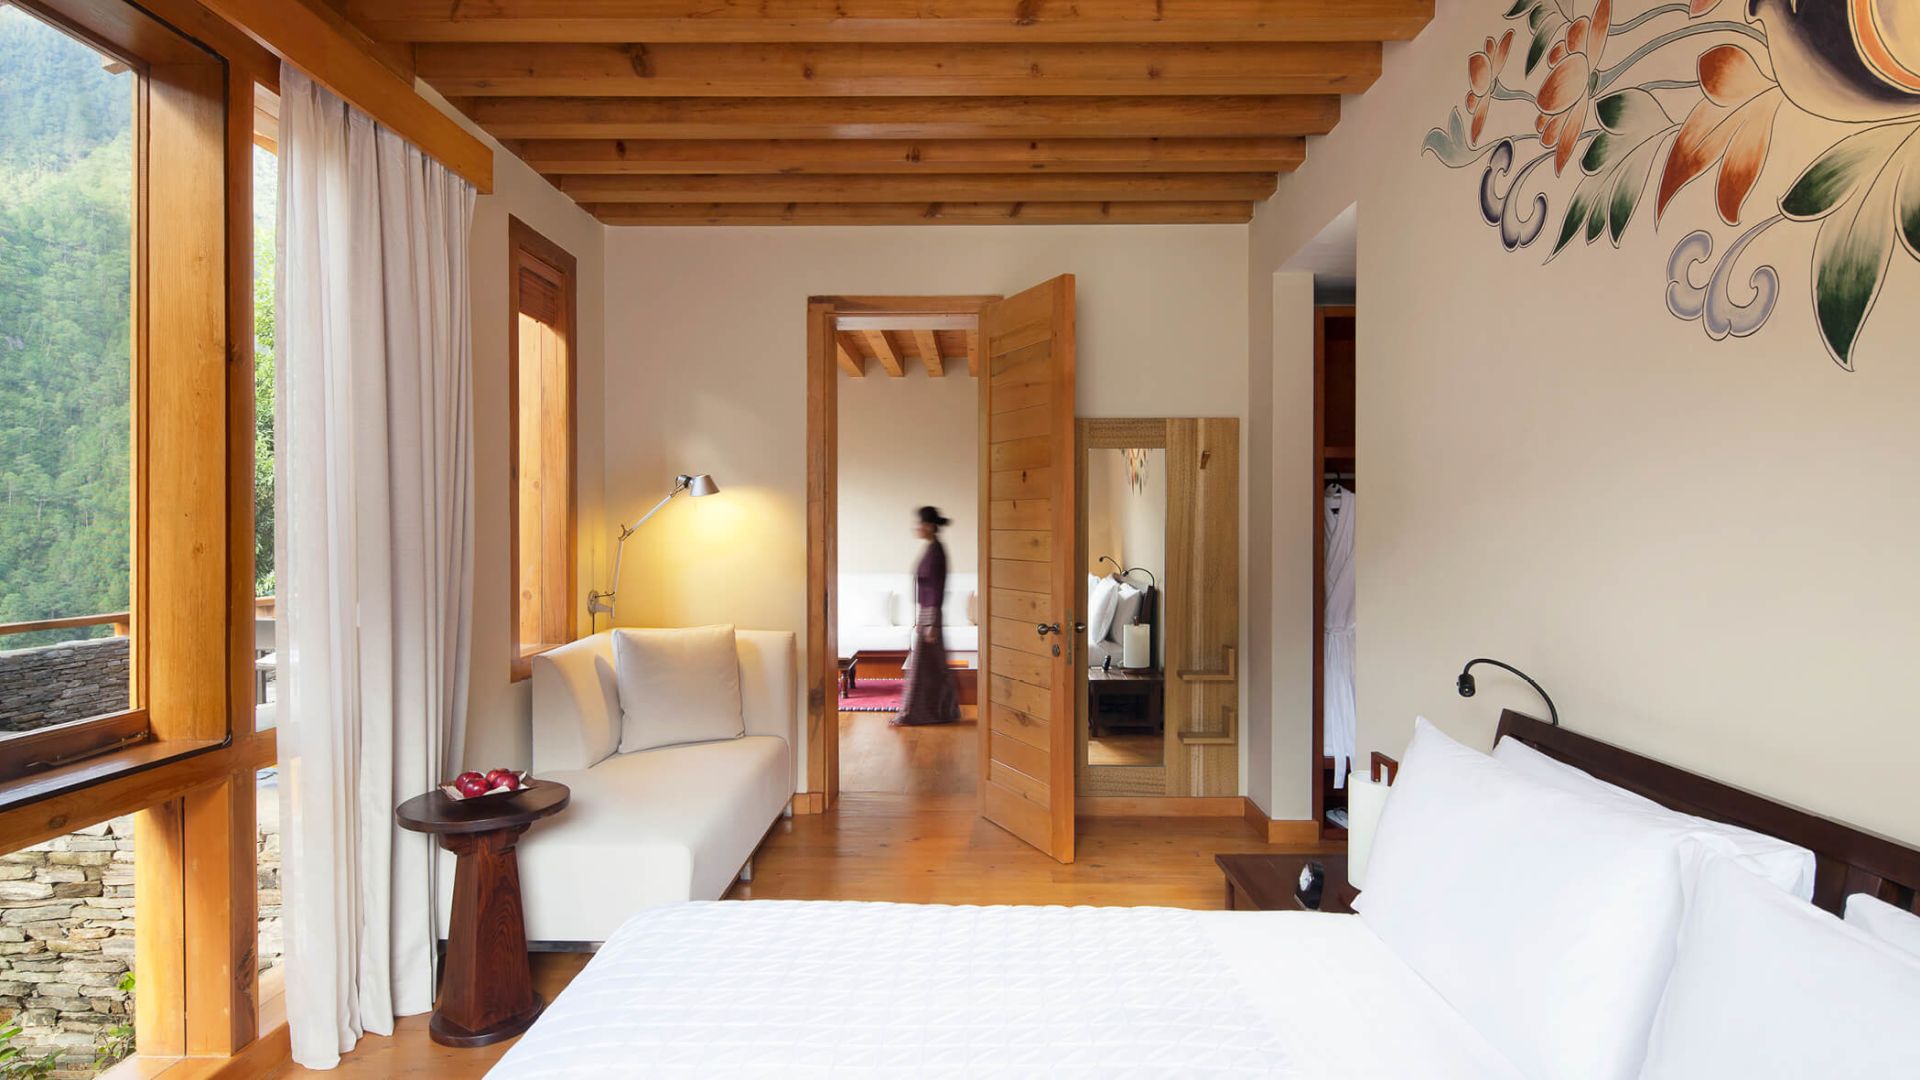 COMO Villa master bedroom - Image